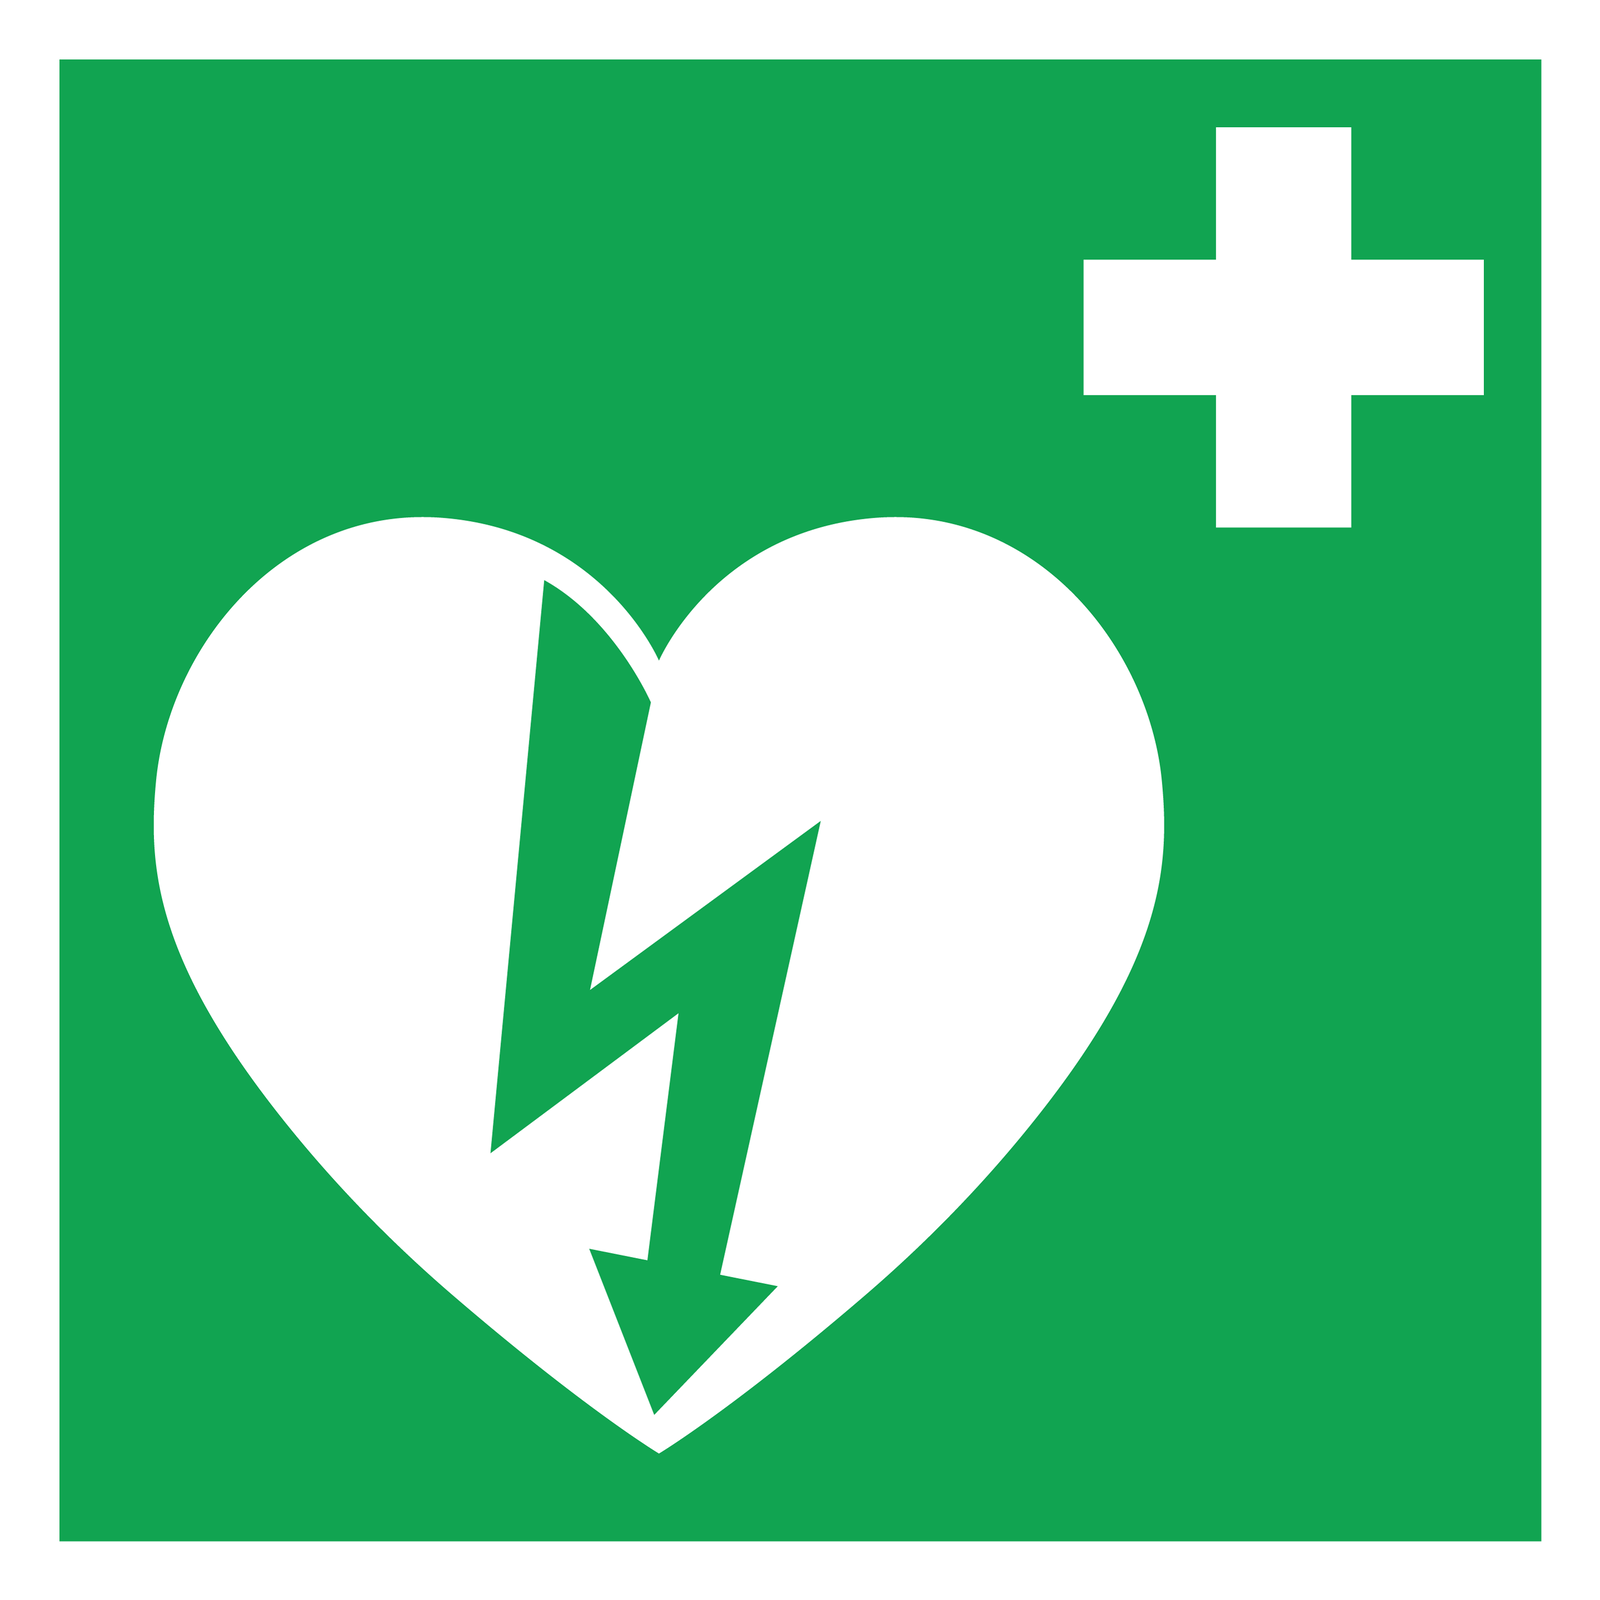 Ilustracja przedstawia zielony kwadrat. W górnym prawym rogu biały krzyż. Krzyż o równych ramionach. Poniżej, białe serce zajmujące dwie trzecie kwadratu po lewej stronie. Na środku serca zielona błyskawica. Grot błyskawicy sięga do dolnego rogu serca. Górna część błyskawicy sięga do lewego półkola serca.